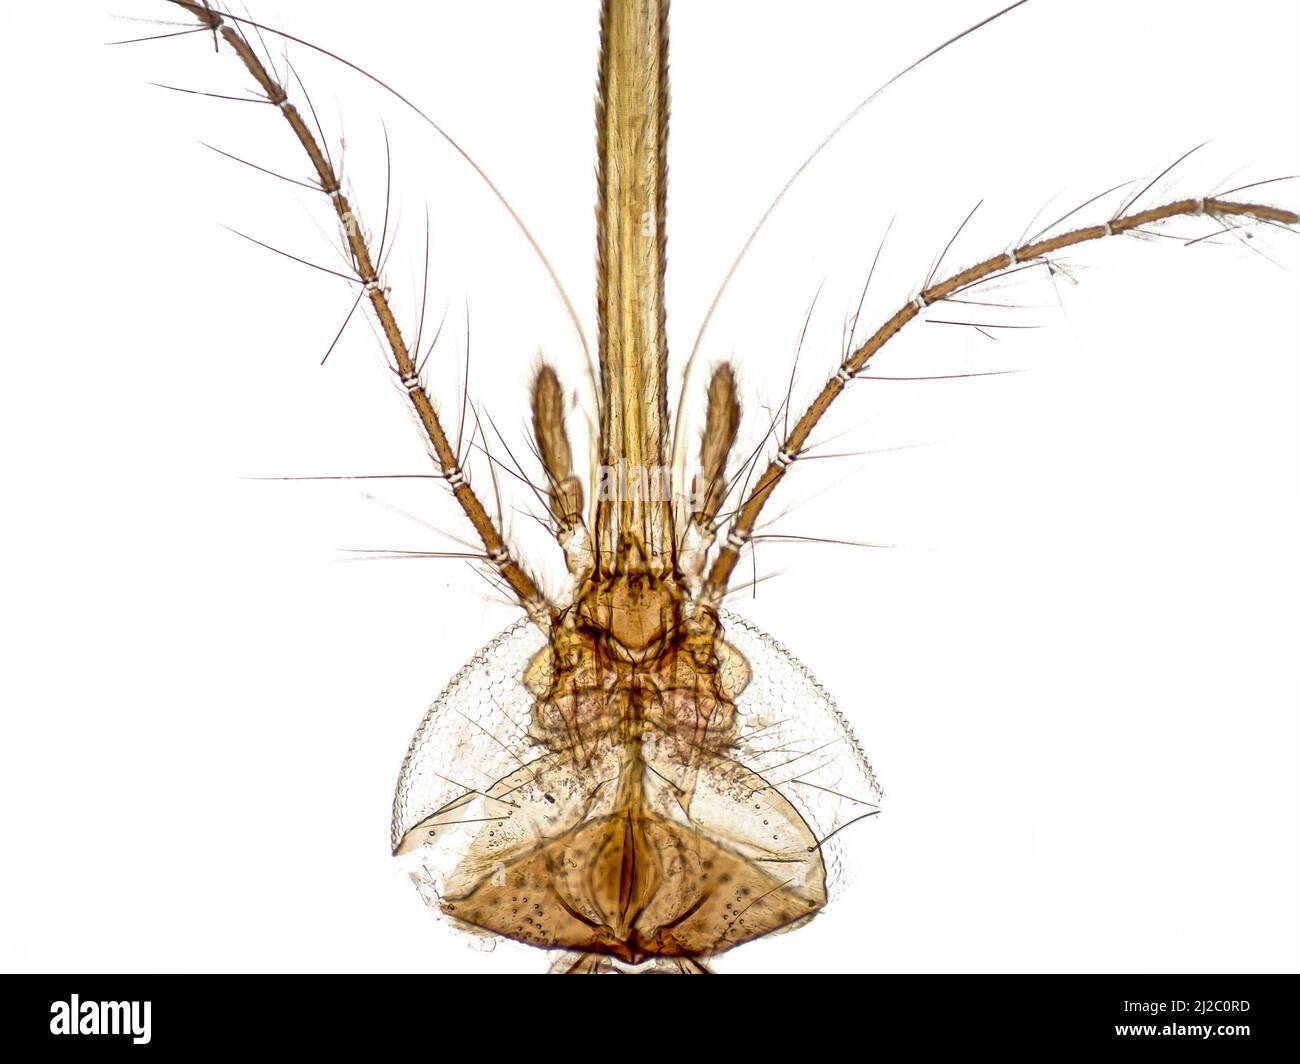 mosquito mouthparts microscope